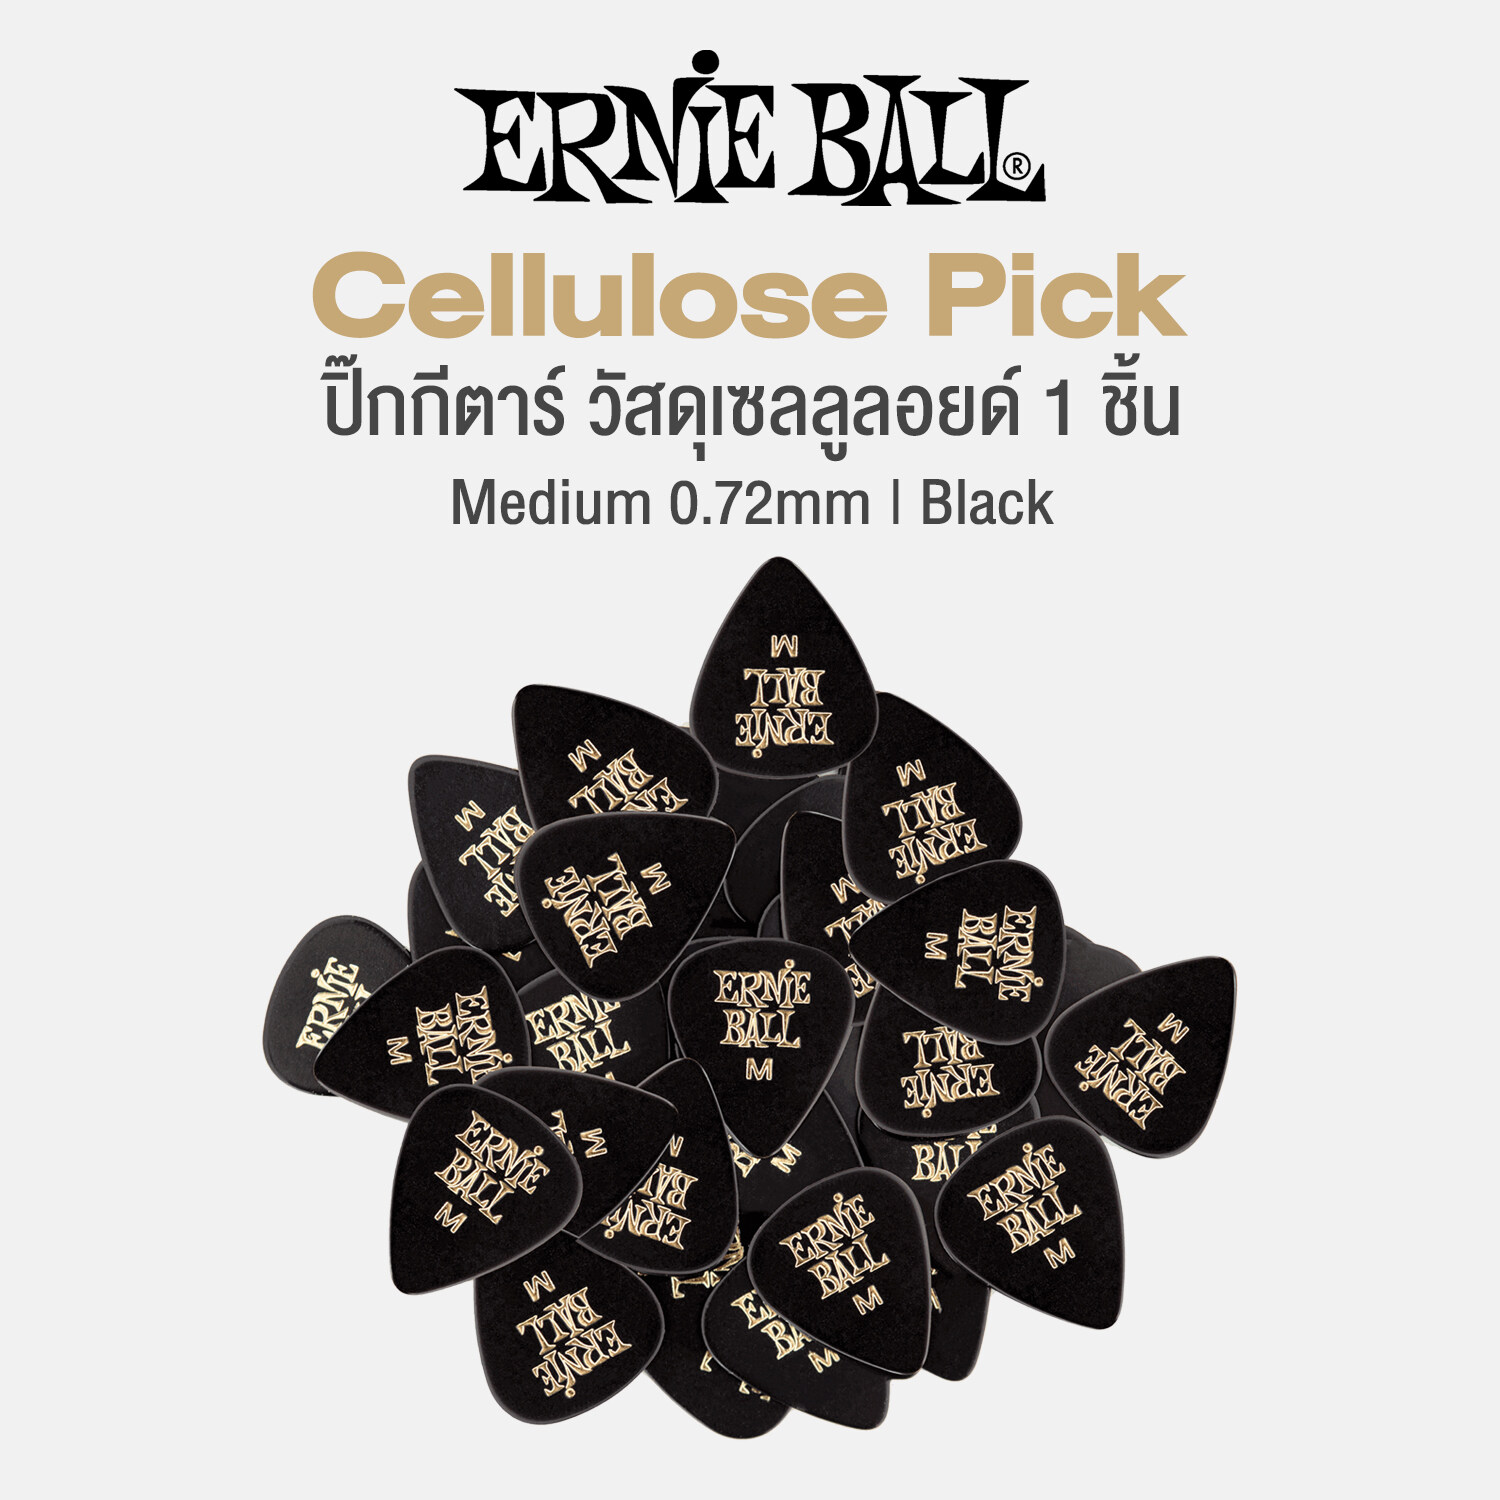 Ernie Ball Cellulose Pick